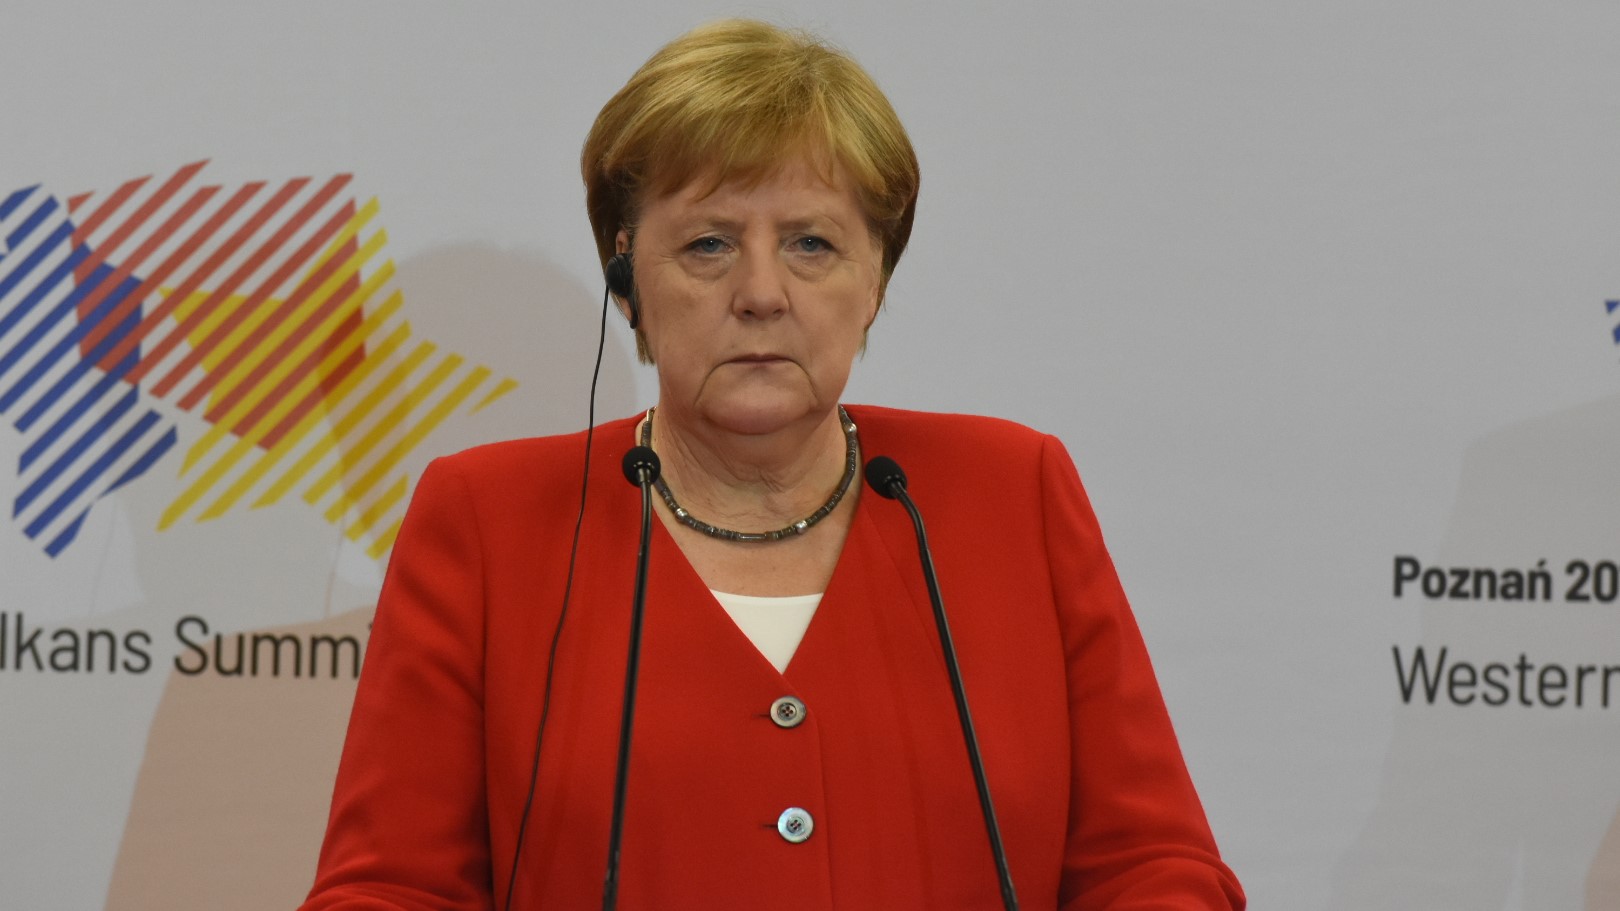 Angela Merkel Szczyt Bałkański - Wojtek Wardejn